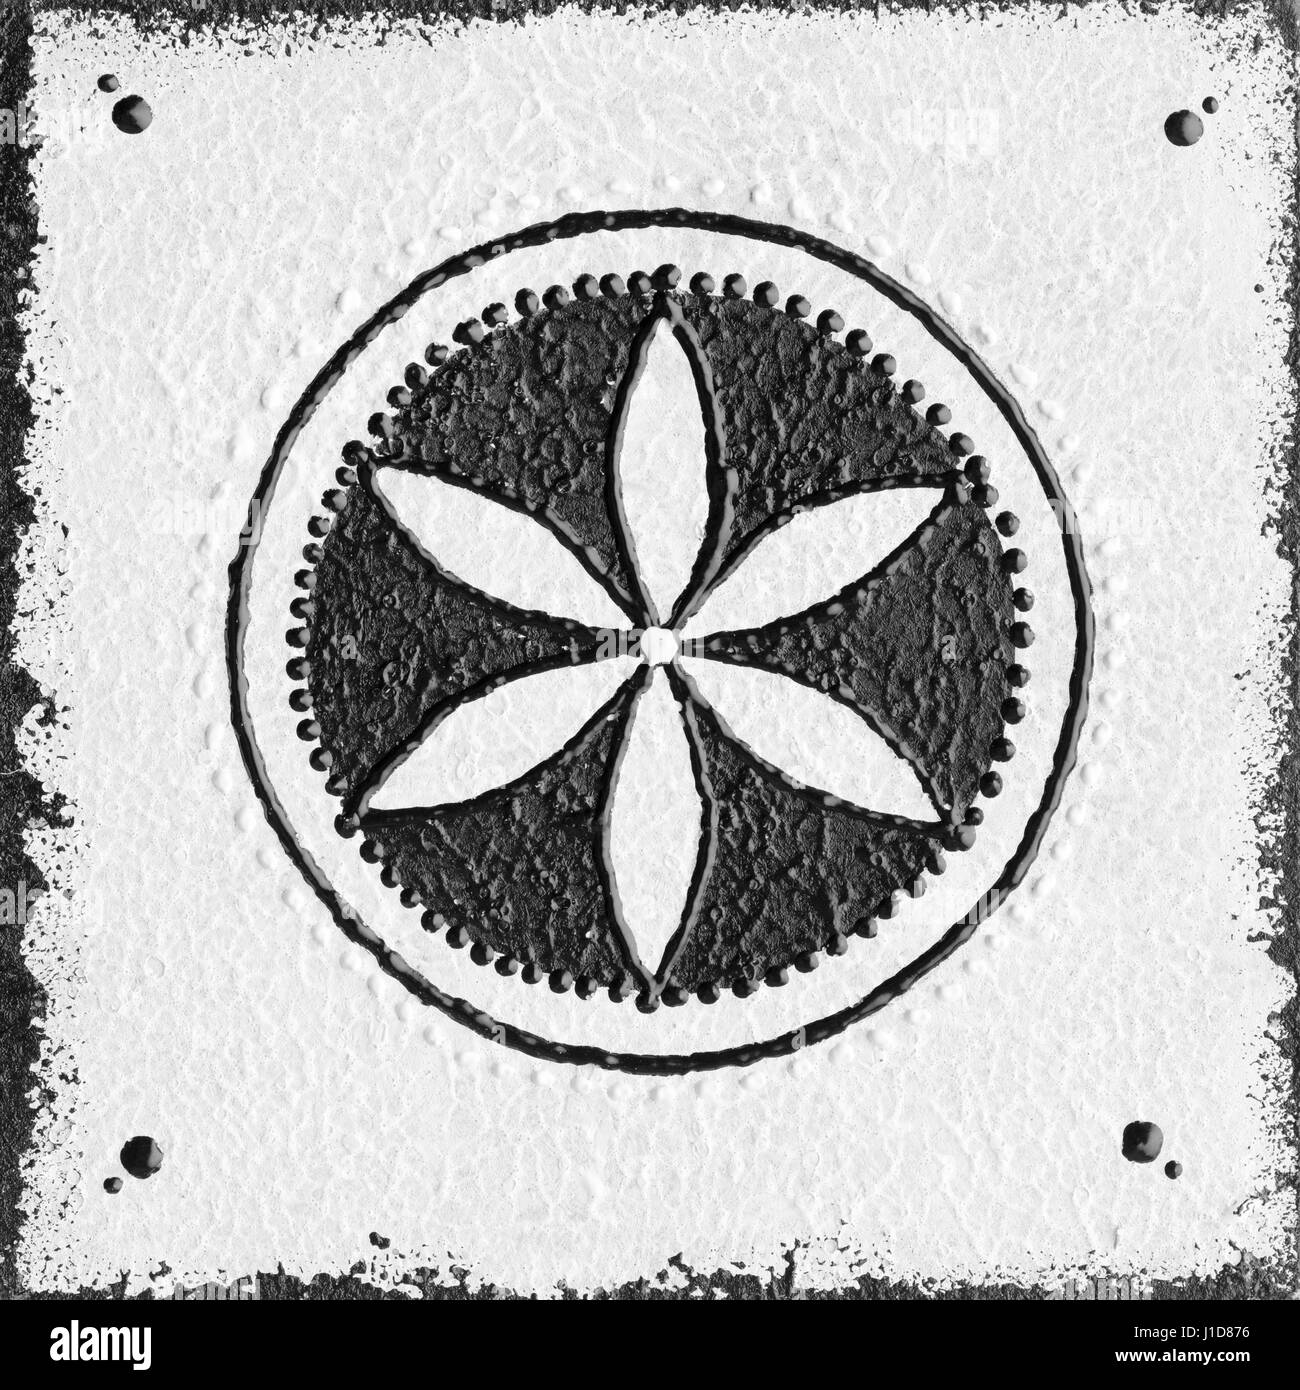 Blanco y negro pintado a mano de la geometría sagrada en cuadrados de madera. Foto de stock